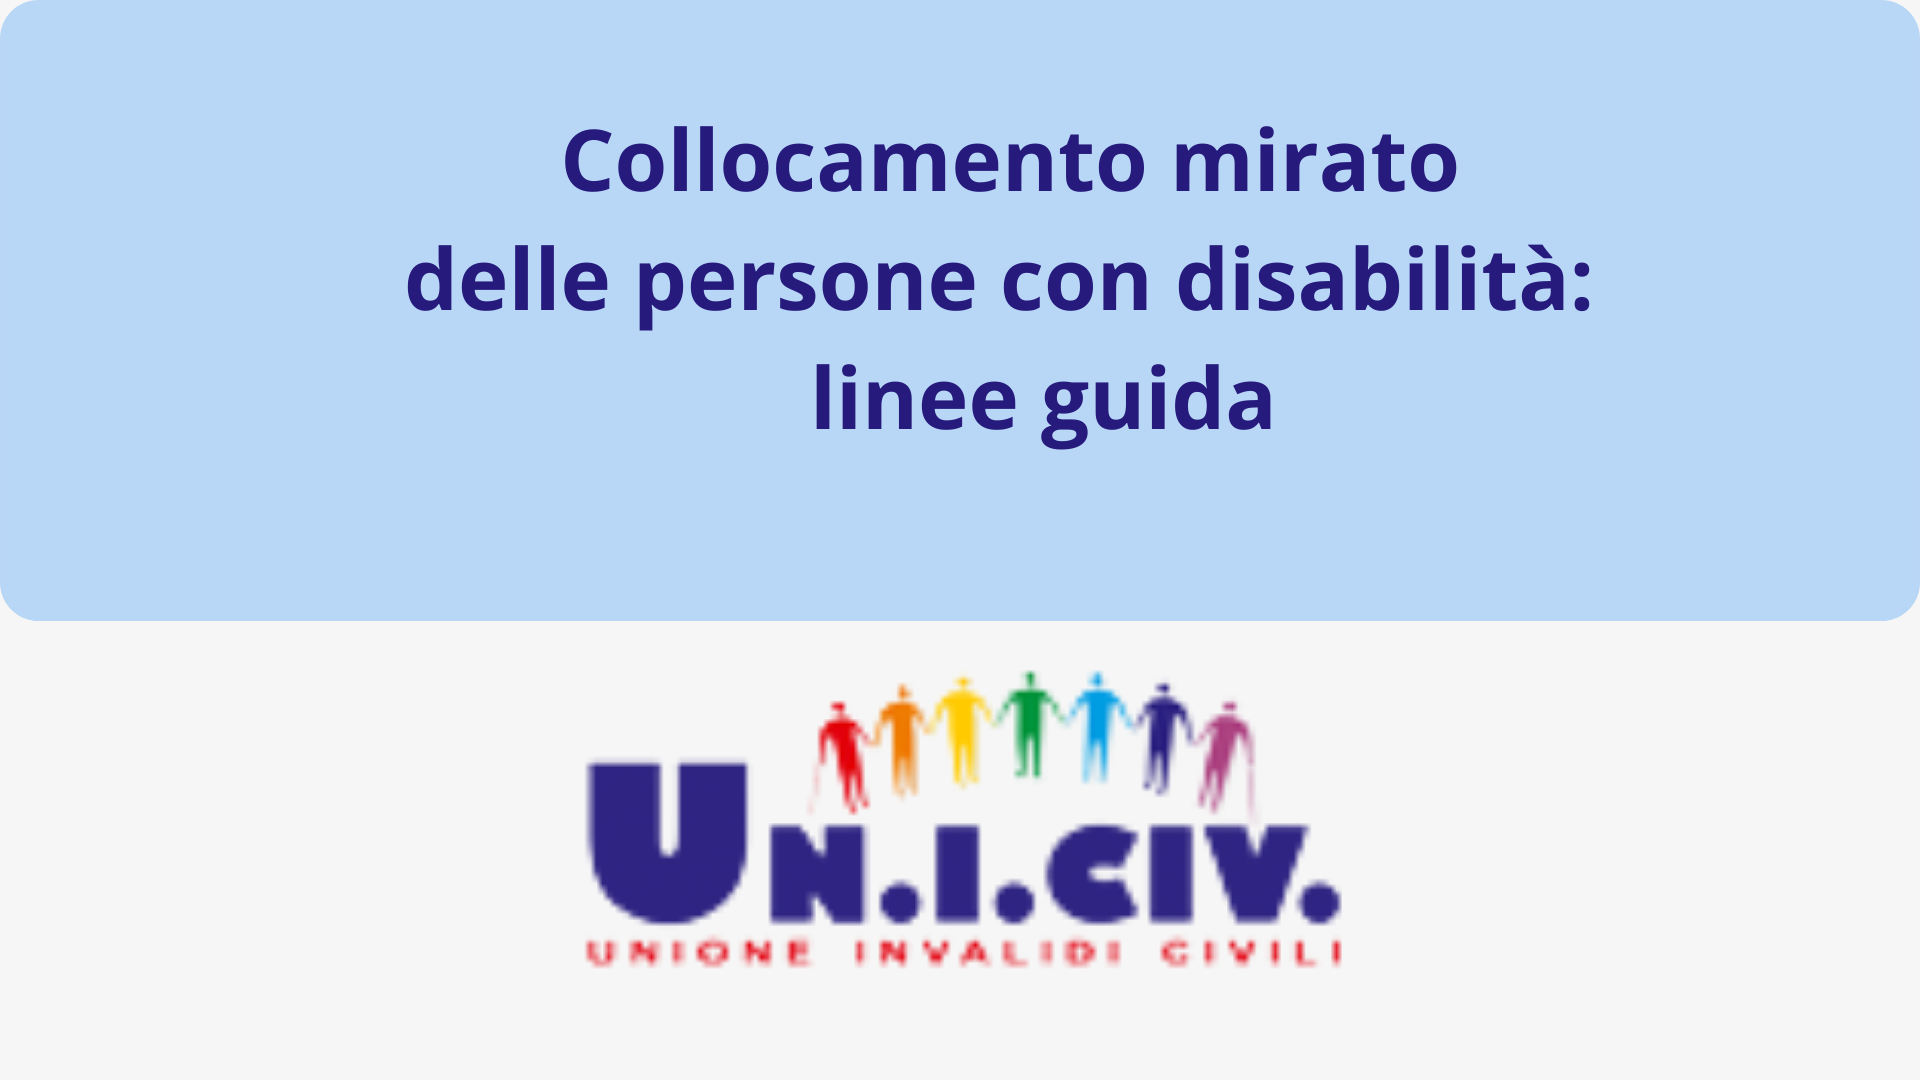 Collocamento mirato delle persone con disabilità:    linee guida